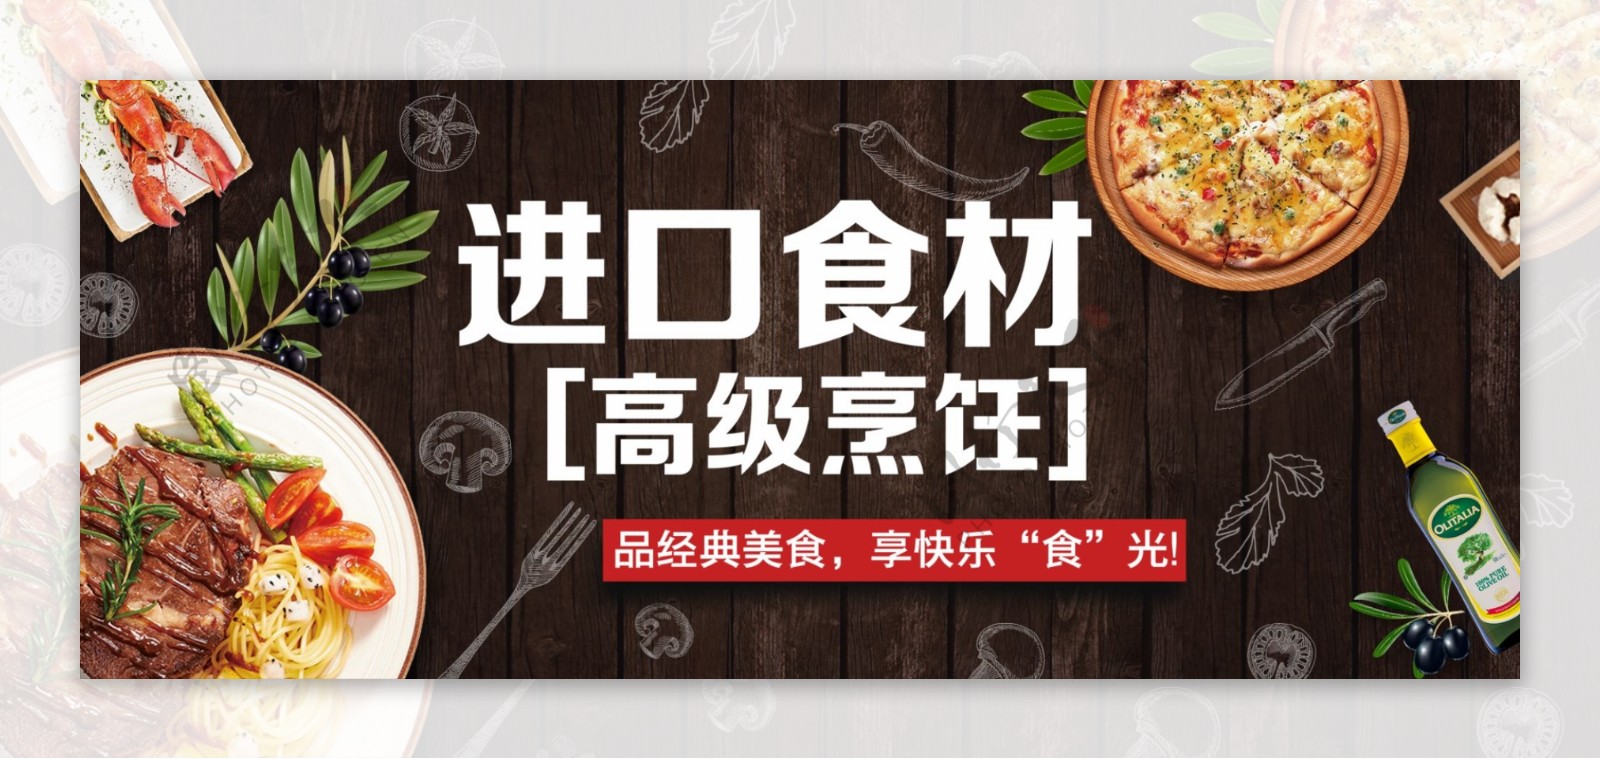 牛排西餐厅banner淘宝电商海报